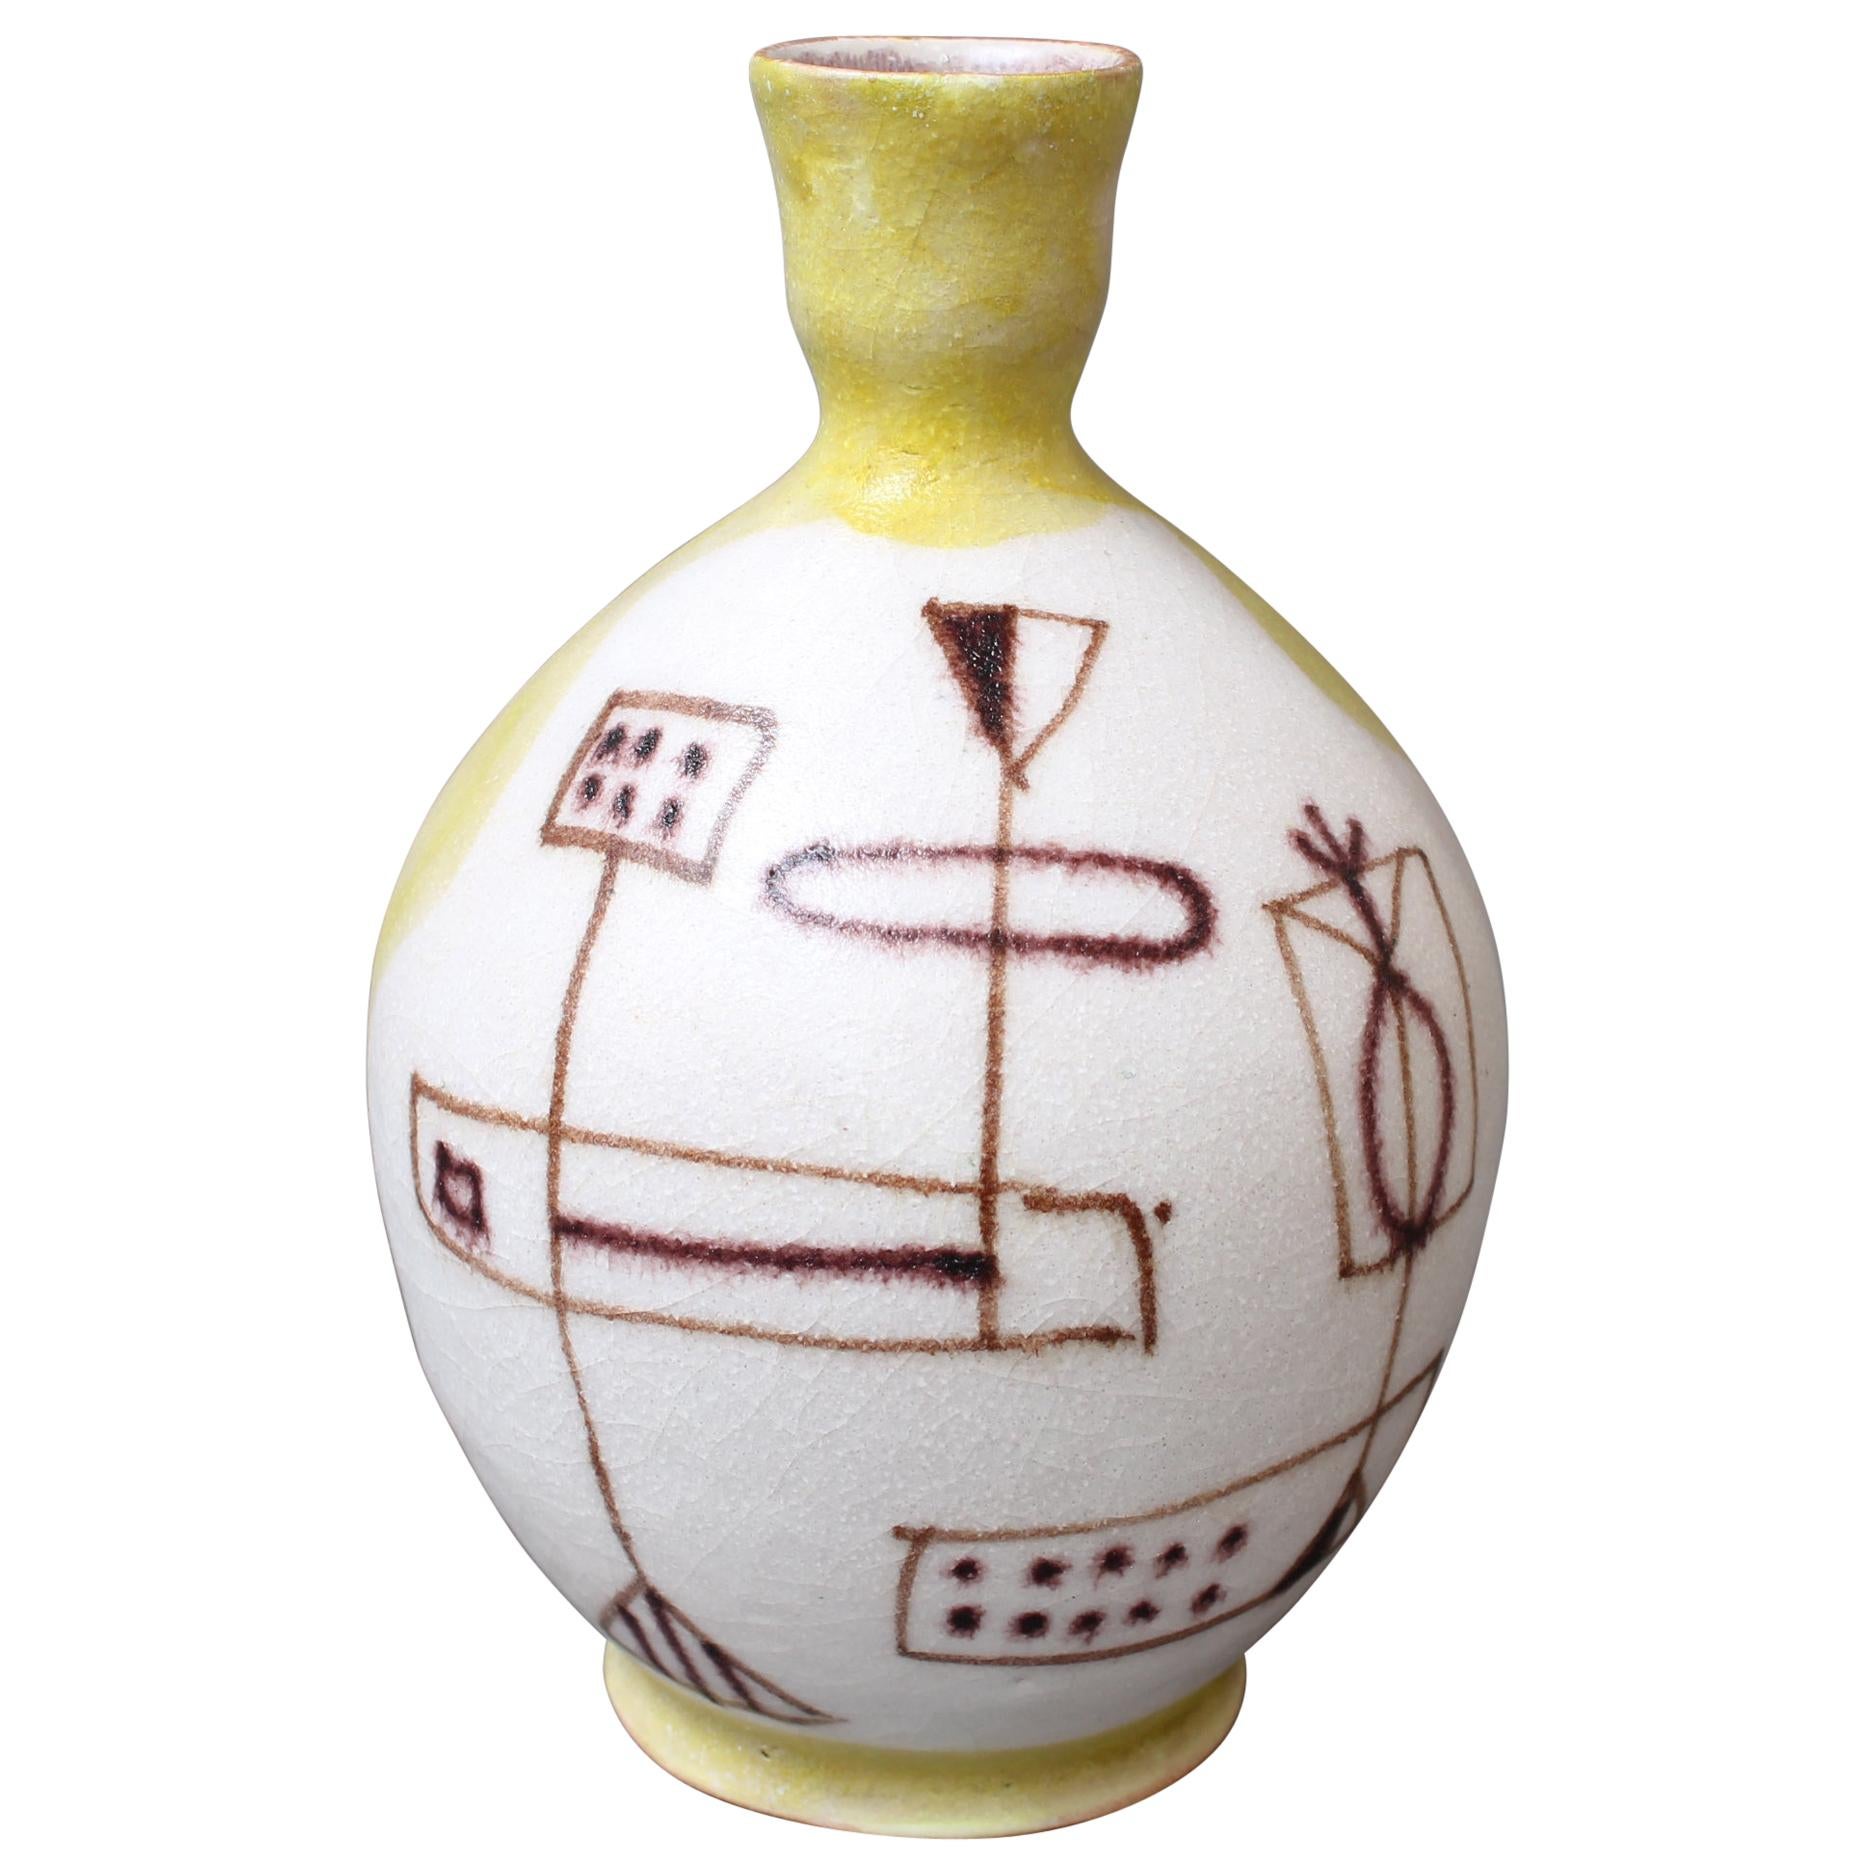 Midcentury Italian Ceramic Vase by Guido Gambone, 'circa 1950s'